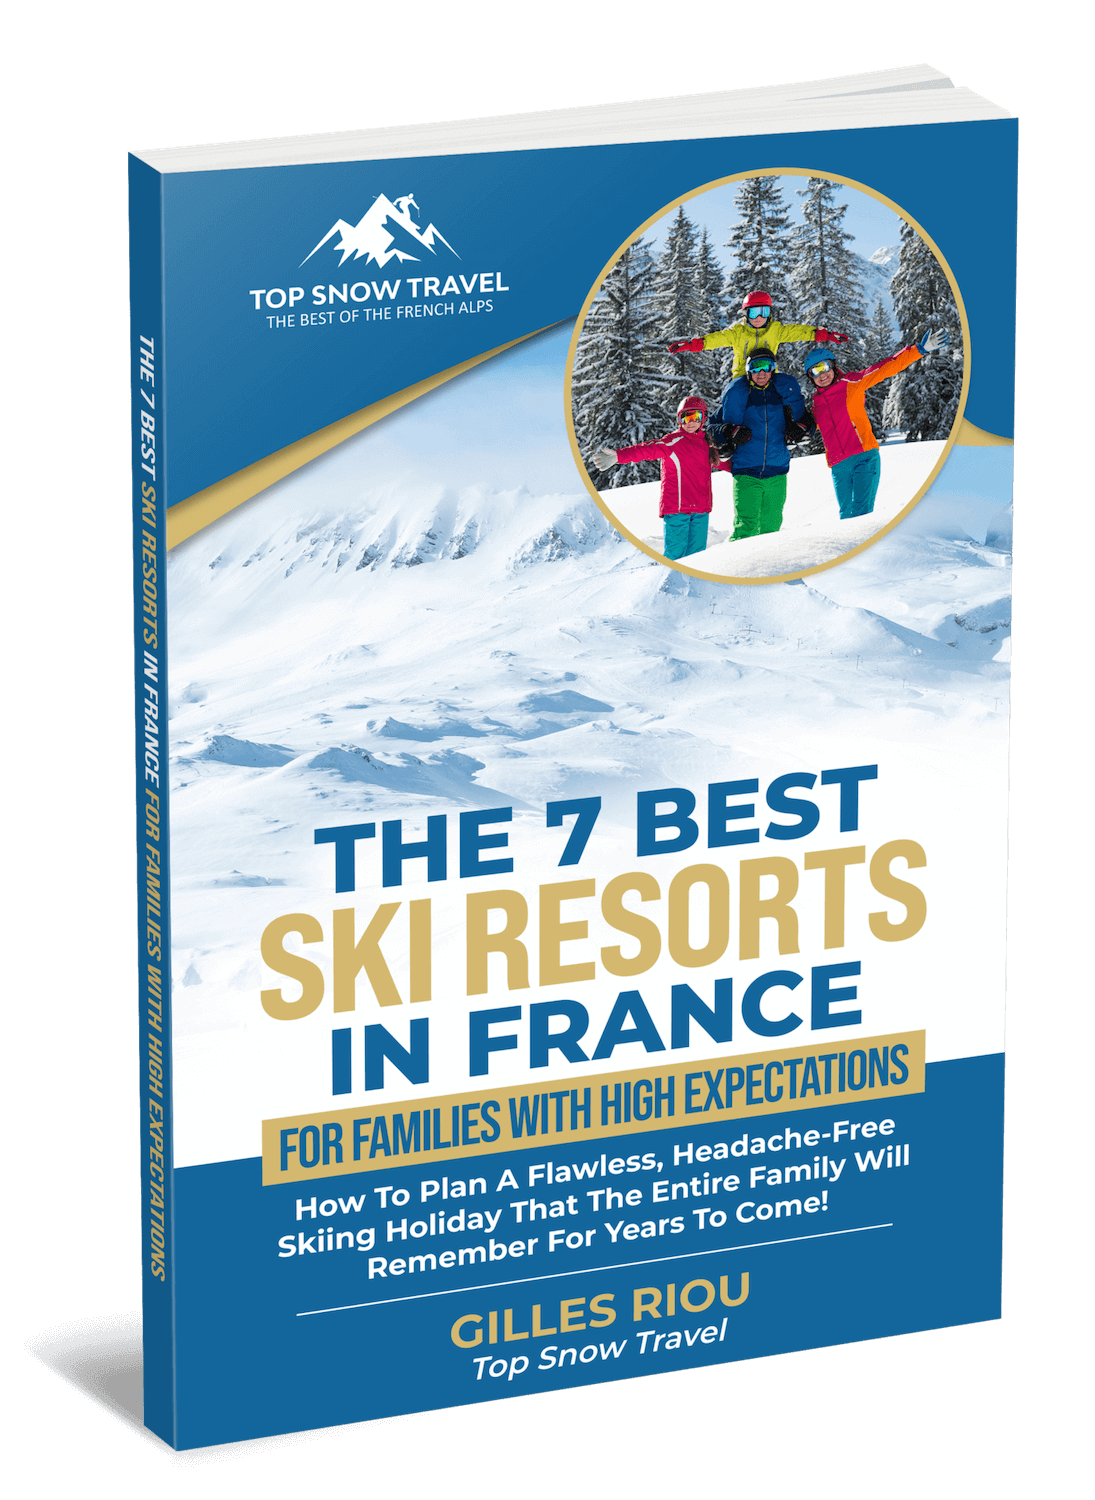 The 7 Best Family Ski Resorts In France